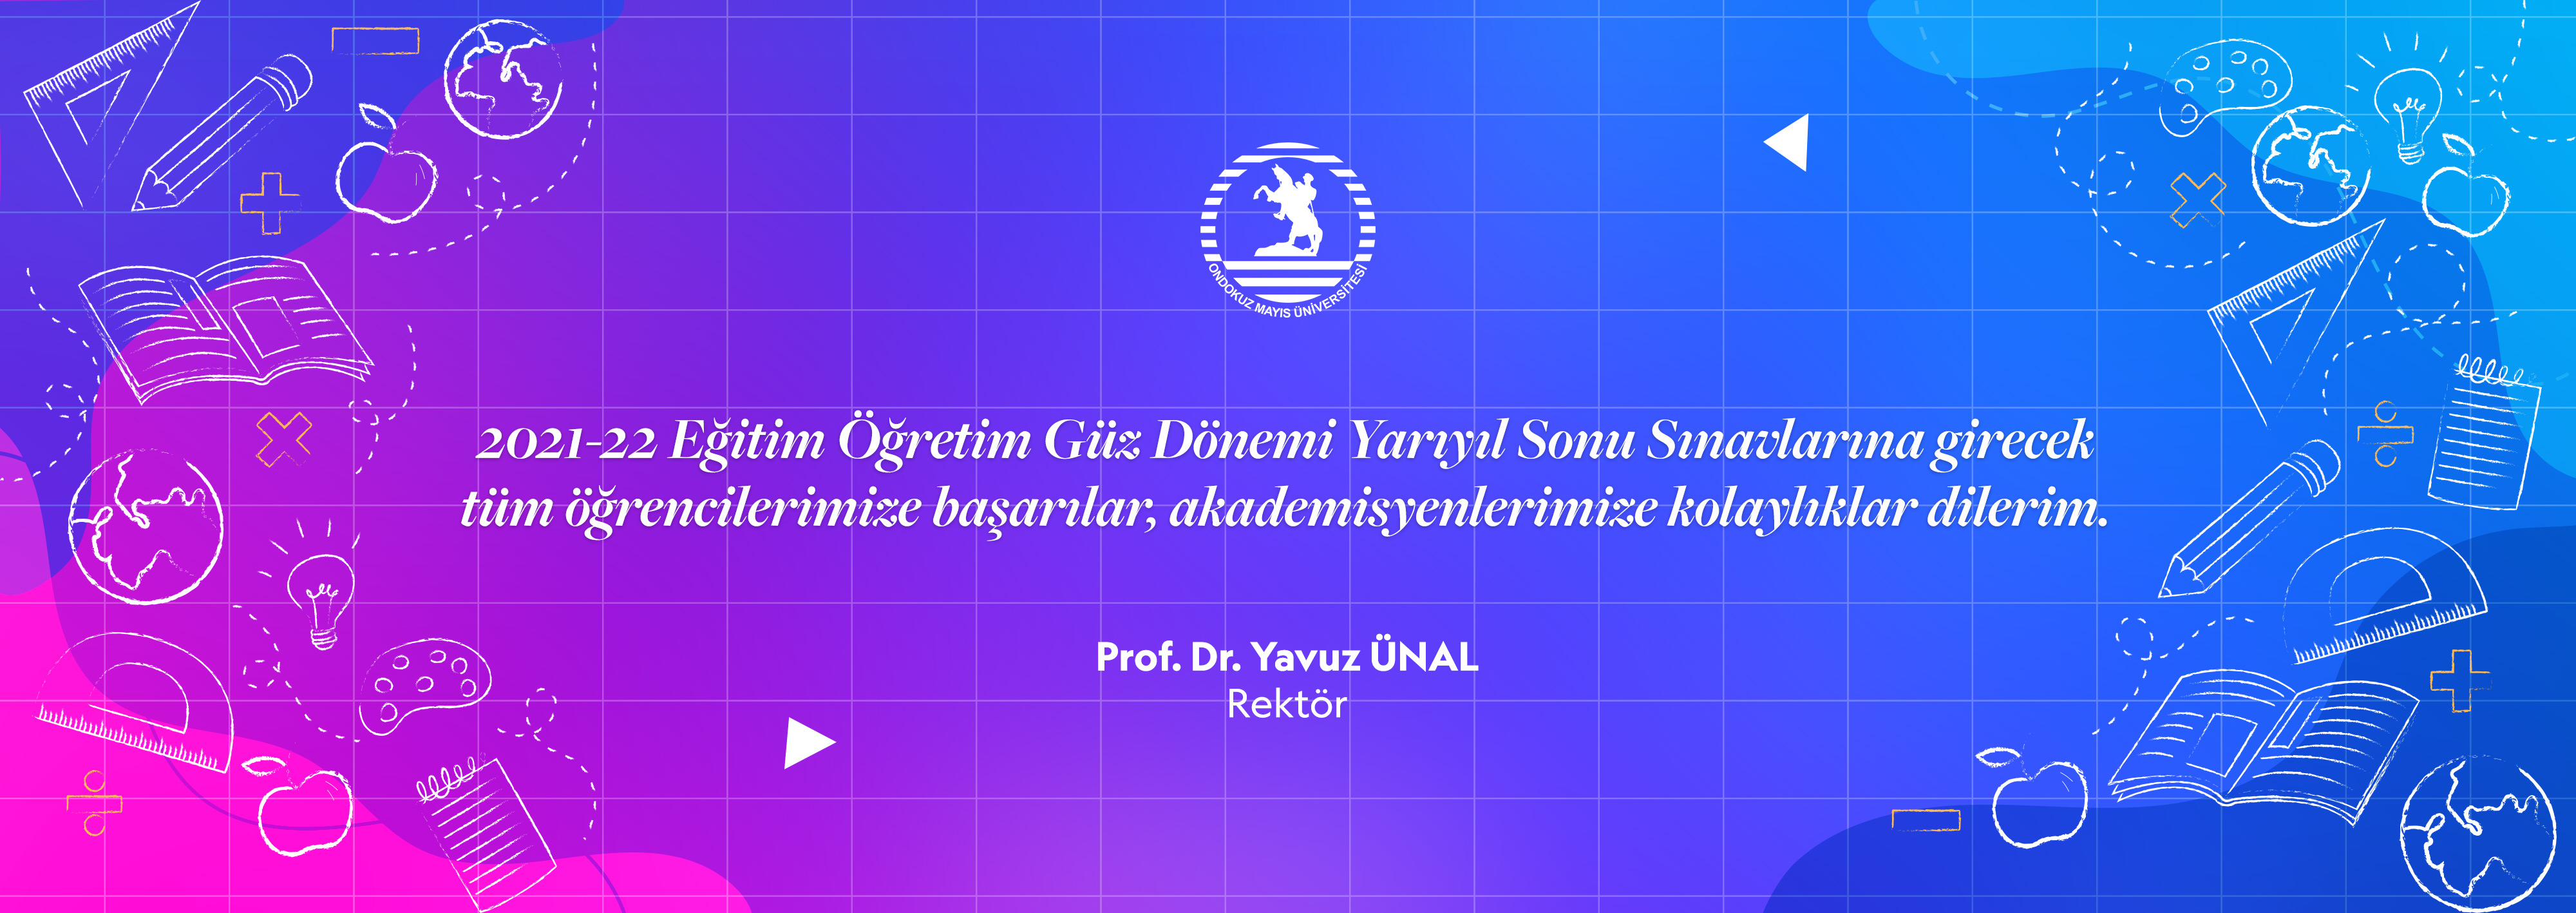 Rektör Prof. Dr. Yavuz Ünal: 